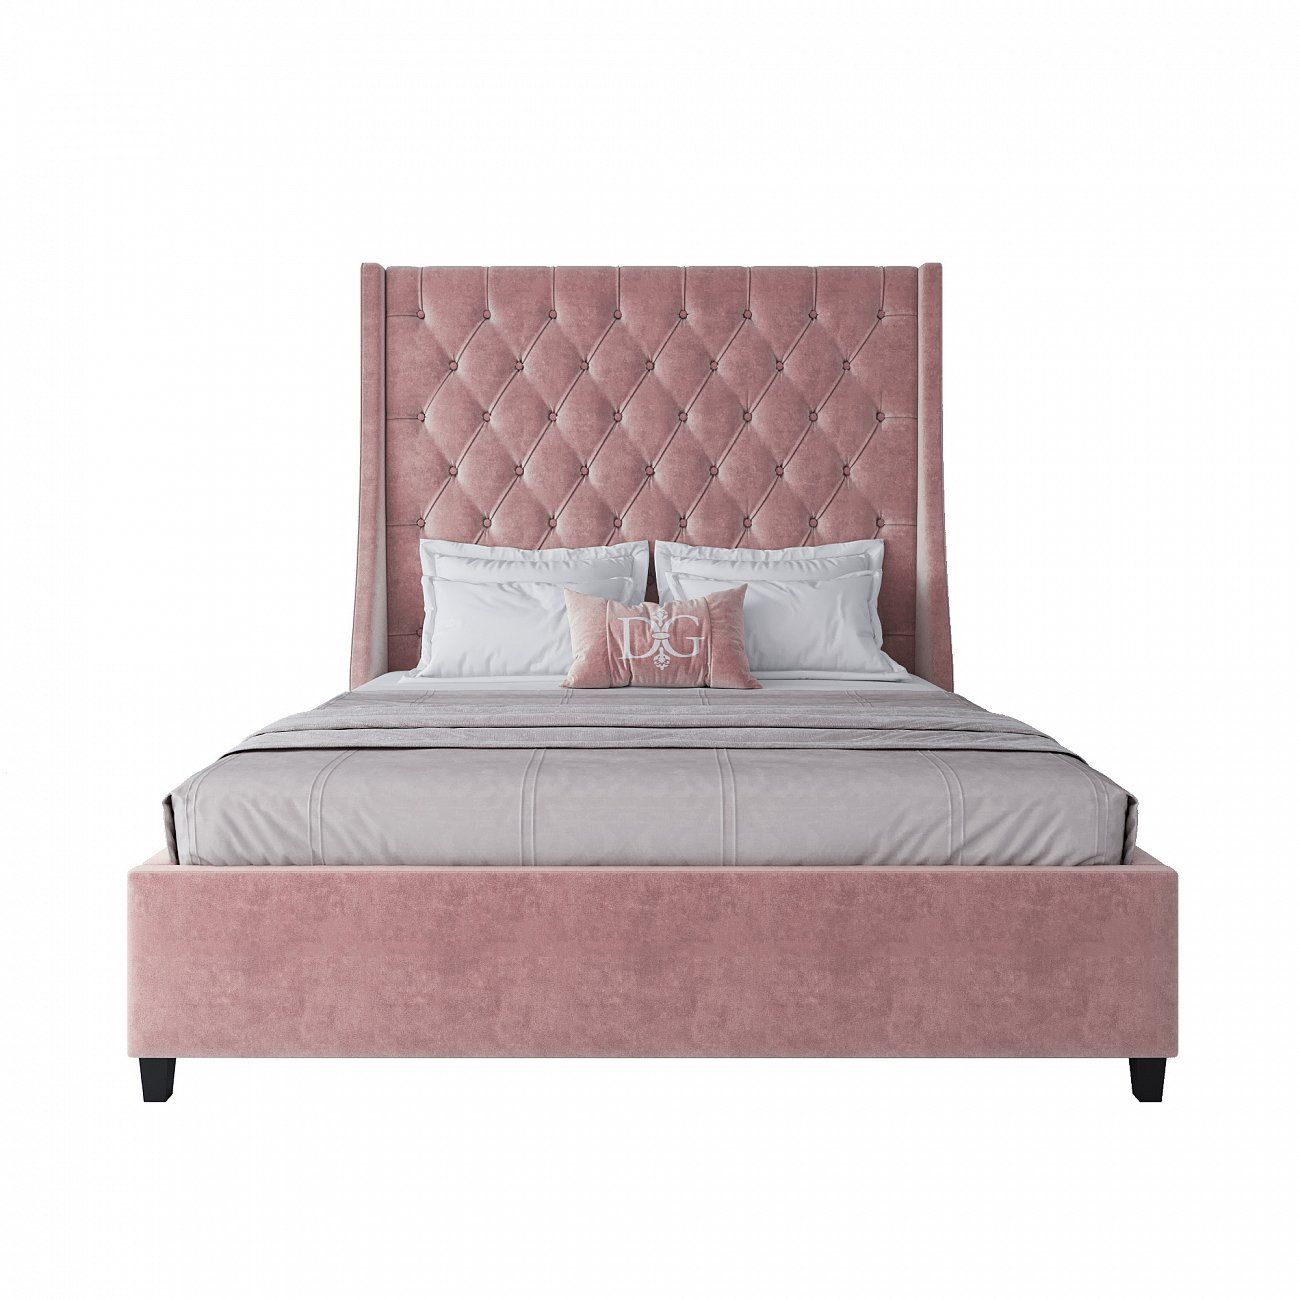 Кровать двуспальная с мягким изголовьем 160х200 см розовая Ada